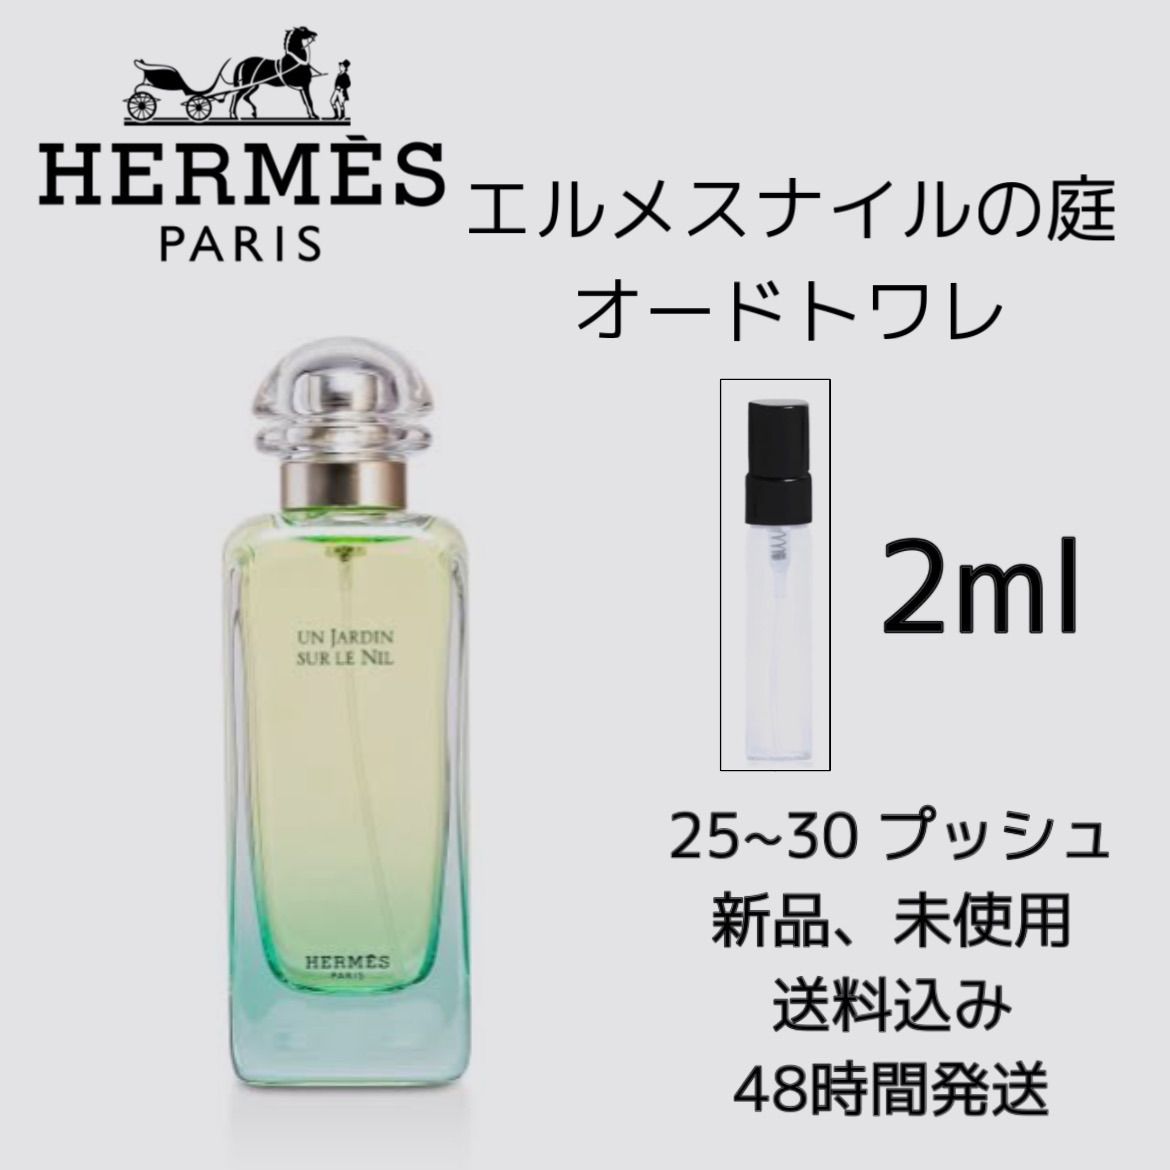 エルメス ナイルの庭 香水 セット - ユニセックス